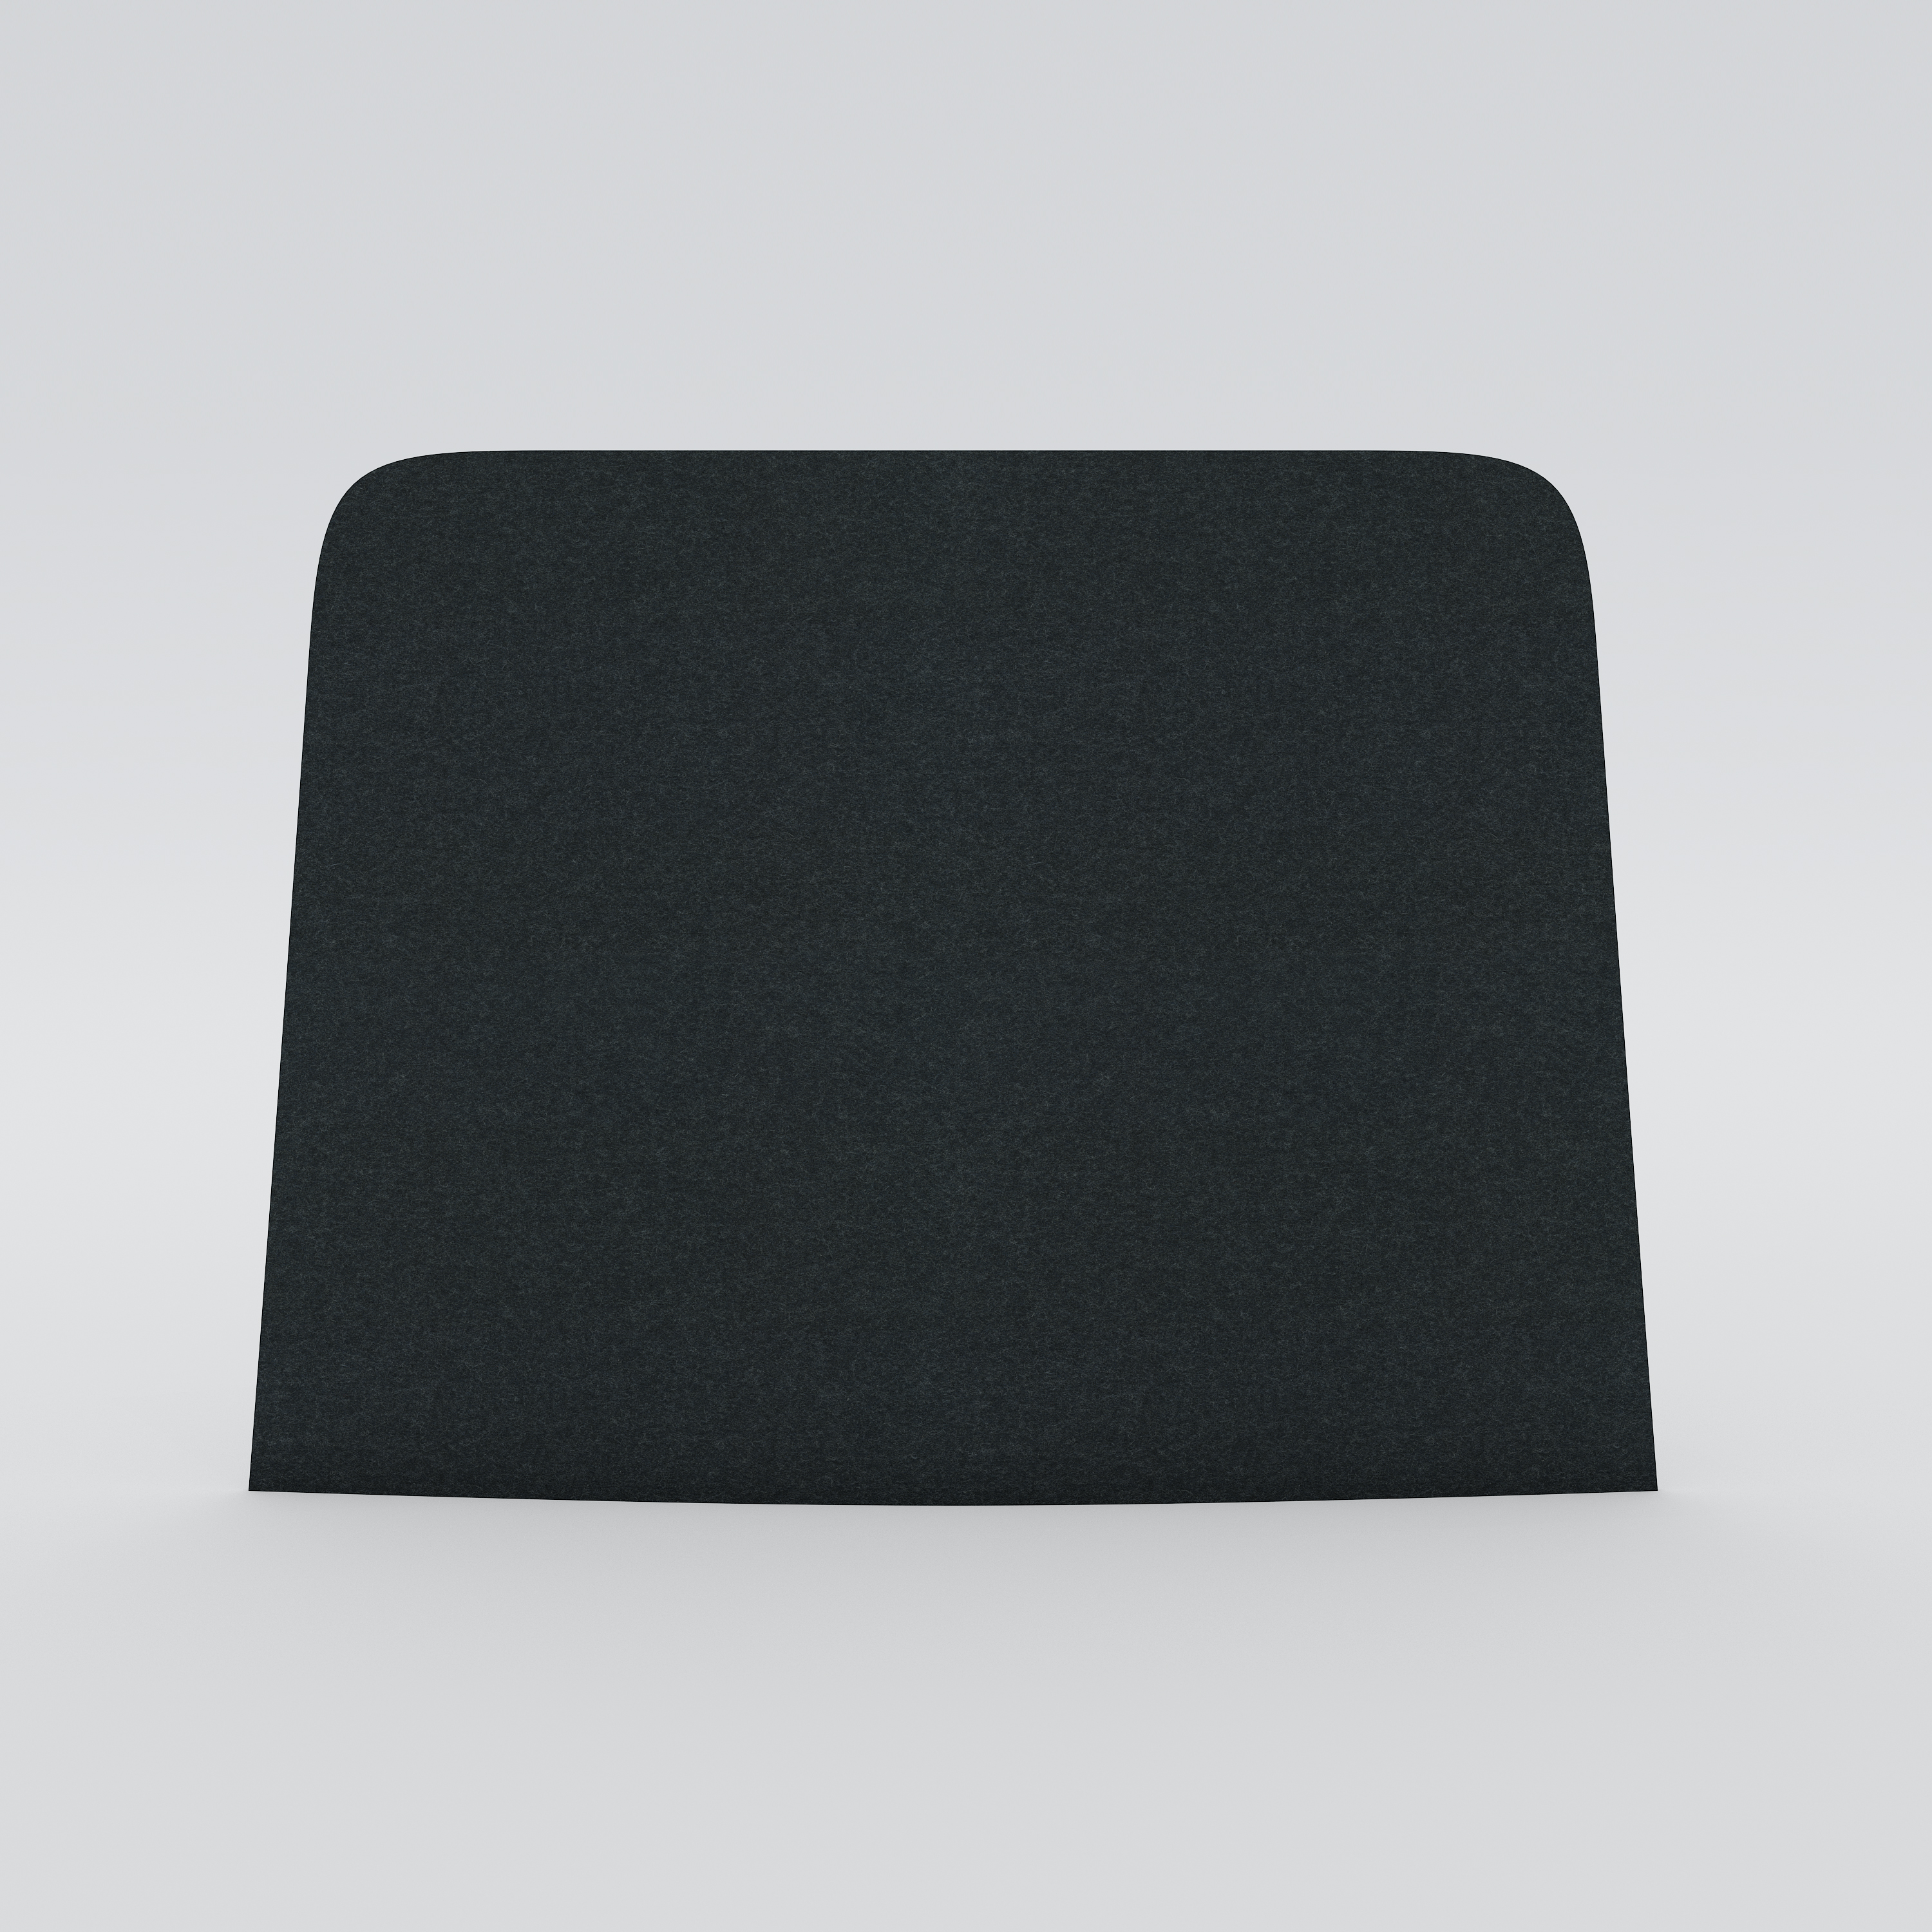 Bordsskärm Ease, mörkgrå filtklädsel, 600x450